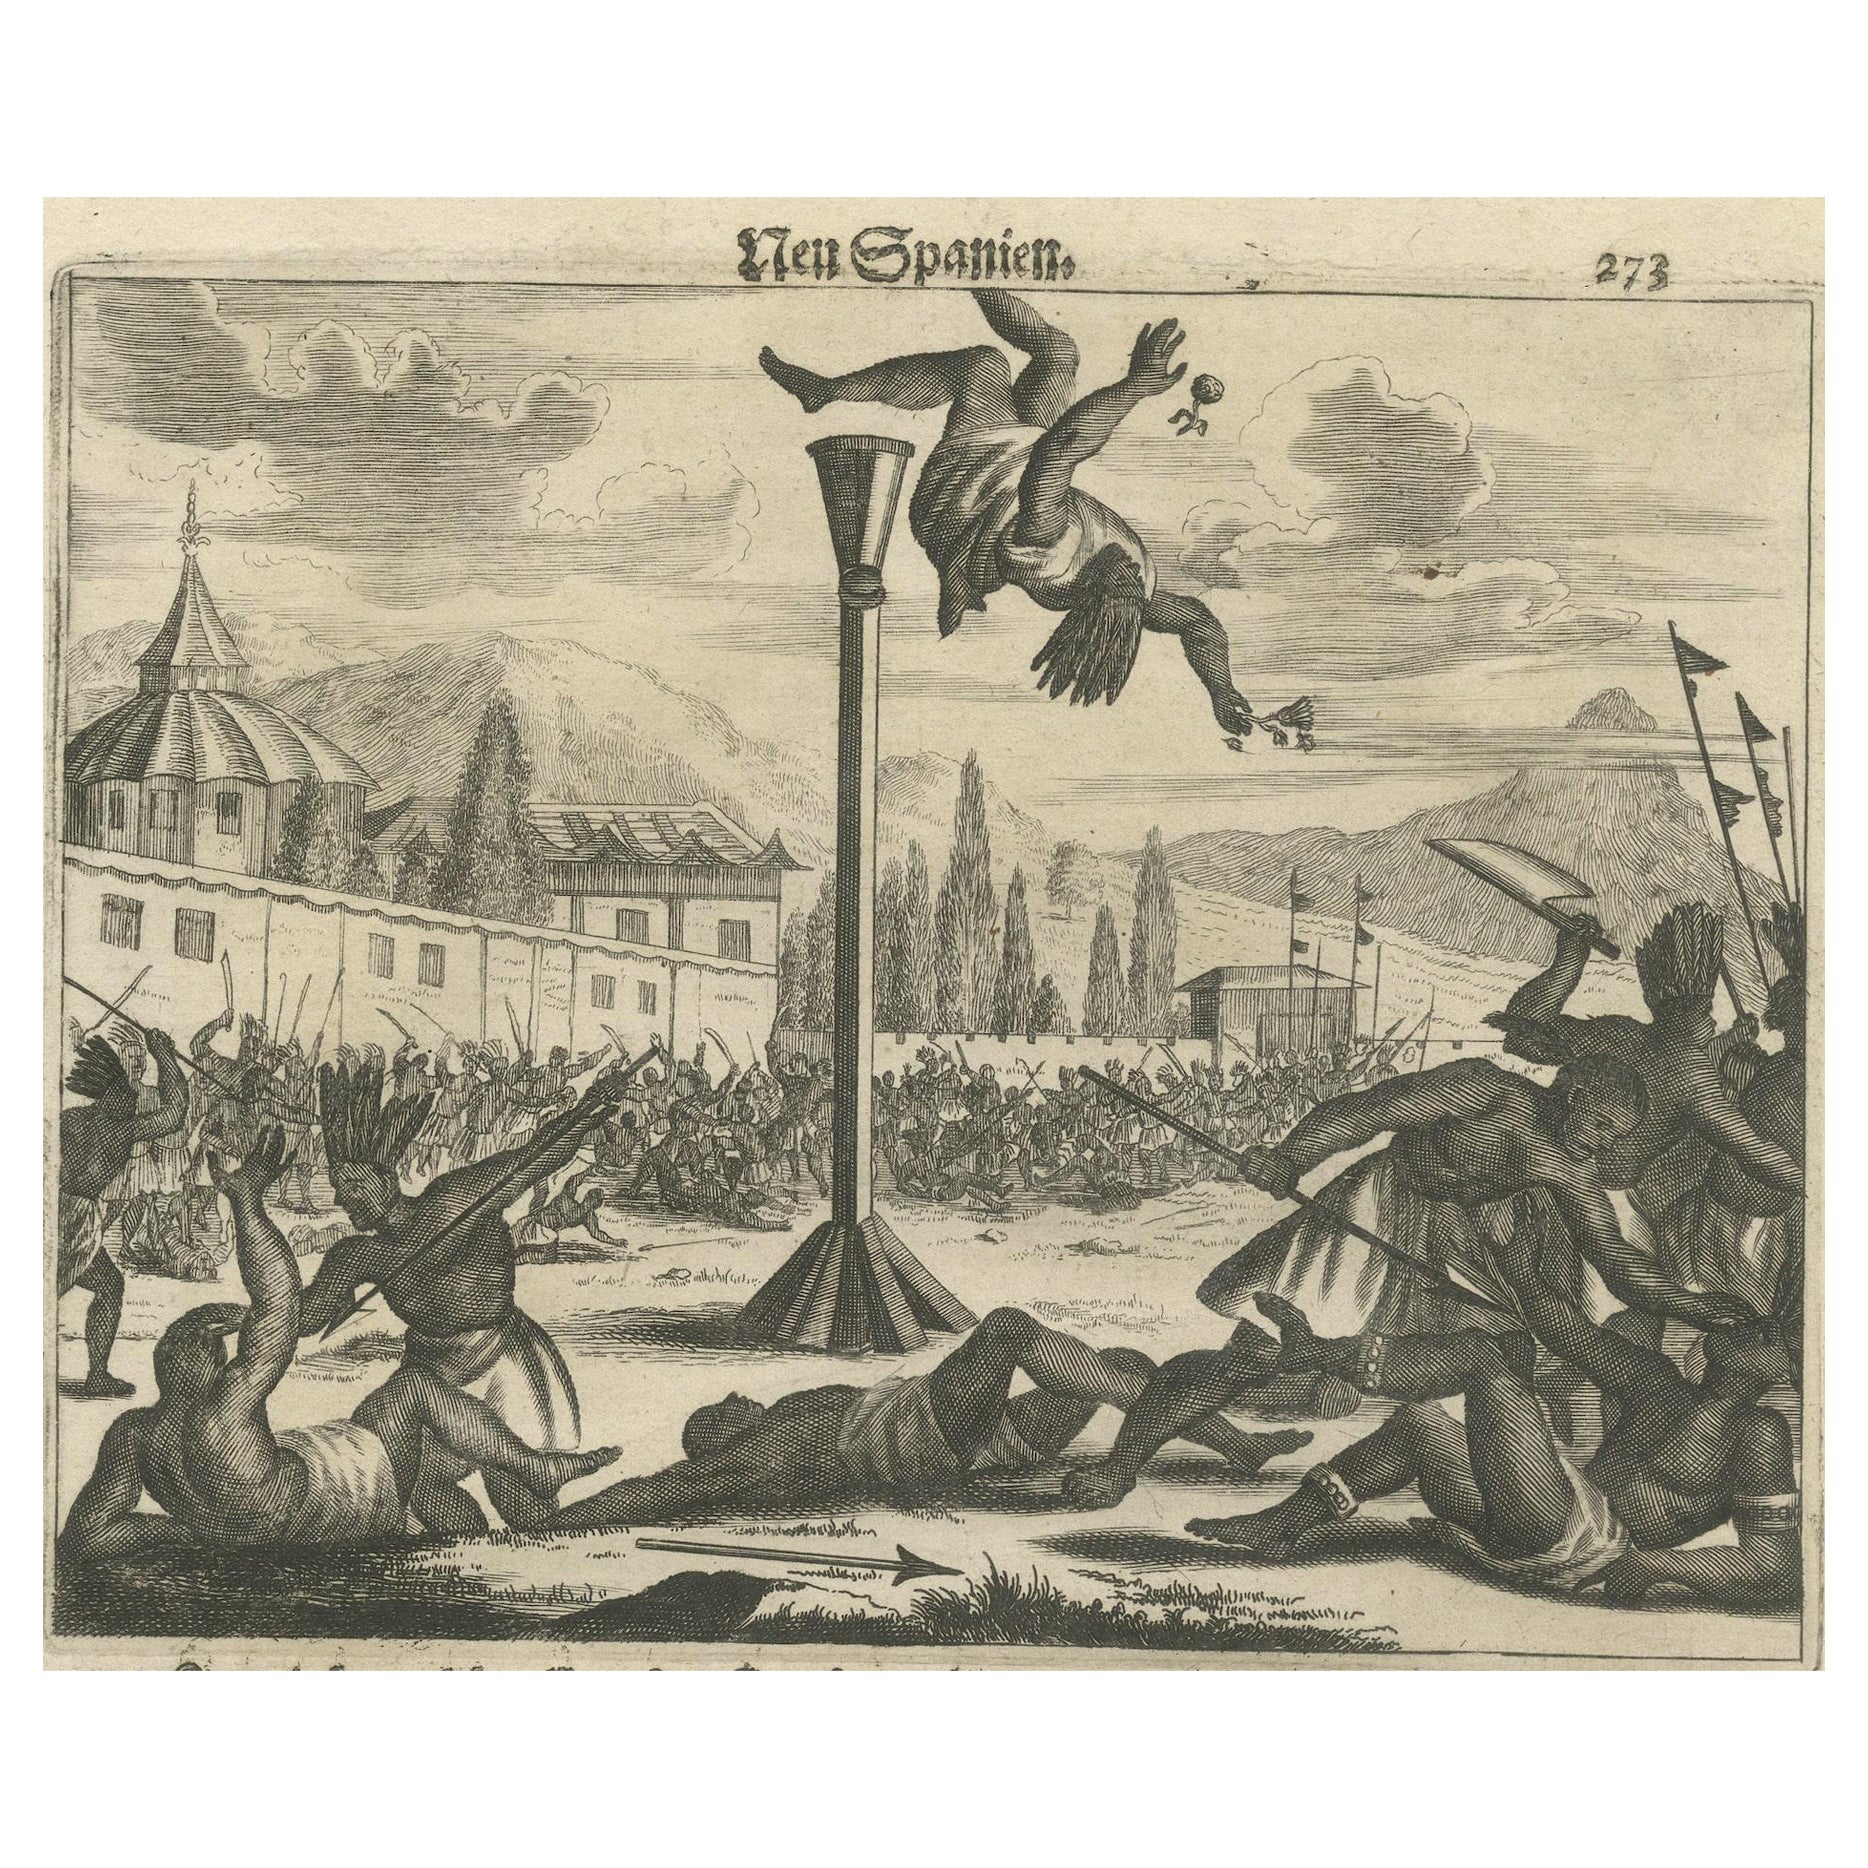 Kupferstich der Eroberung und Kultur in Neuengland von Montanus, 1673, Kupferstich